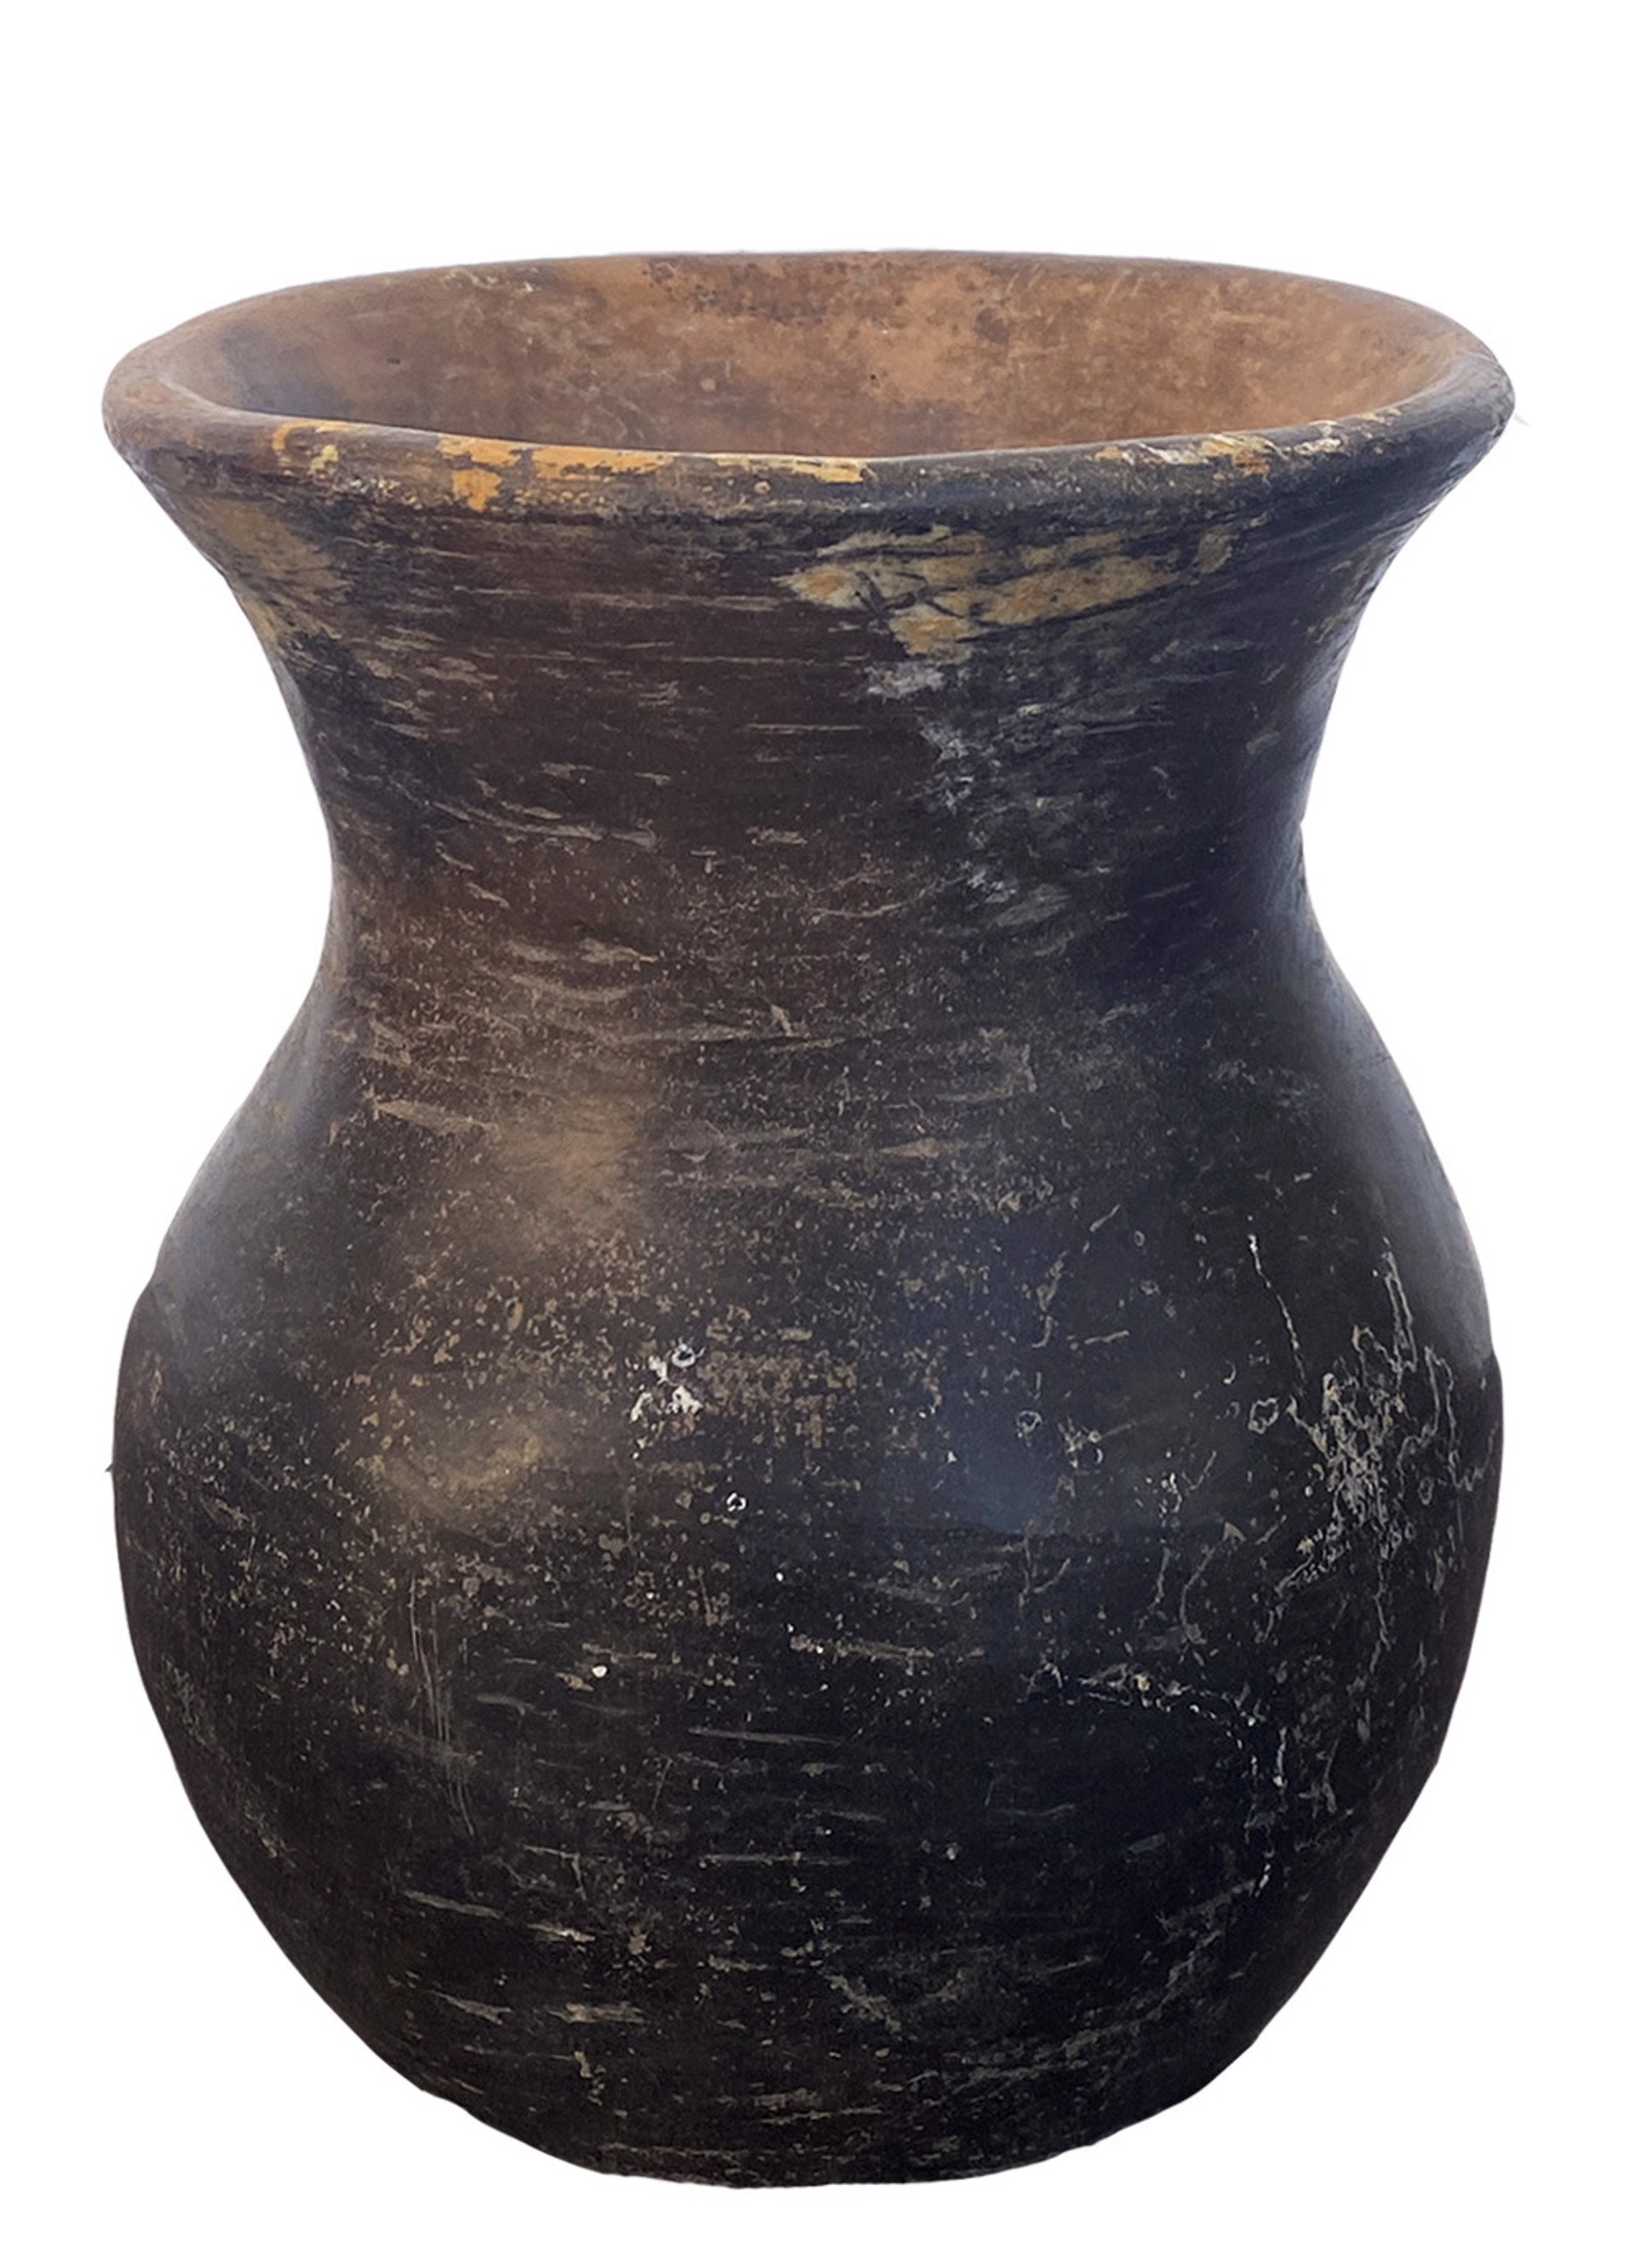 Tripod Vase 36 Oaxaca Valley by Pre Columbian